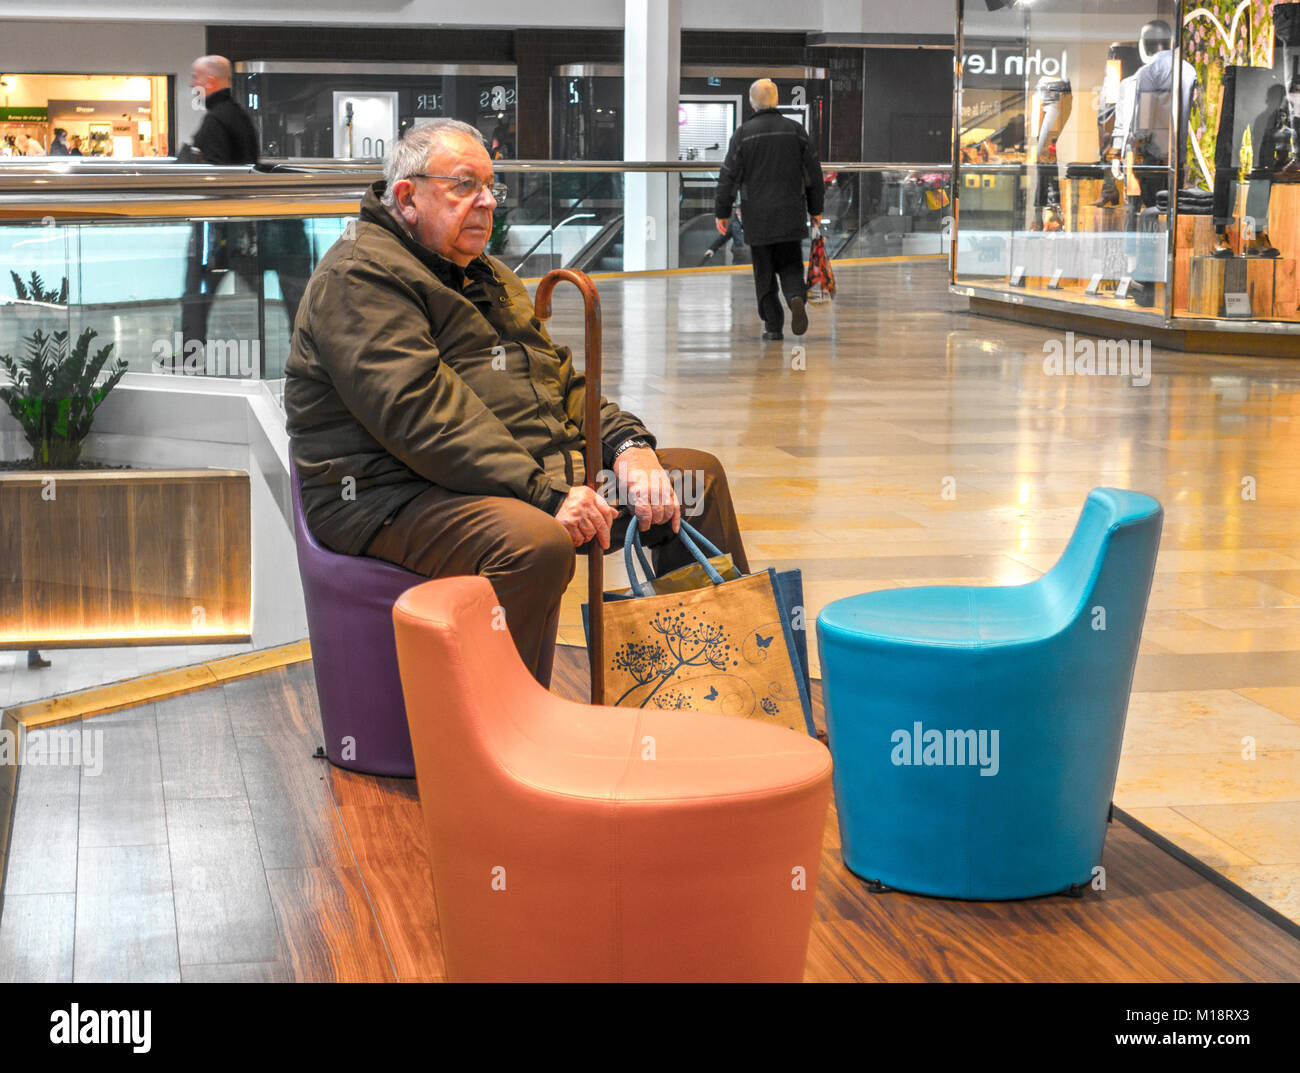 Alter Mann, sitzend, mit einem Stock und einige Tragetaschen in die Queensgate Shopping Center, Stadt Peterborough, Cambridgeshire, England, UK. Stockfoto